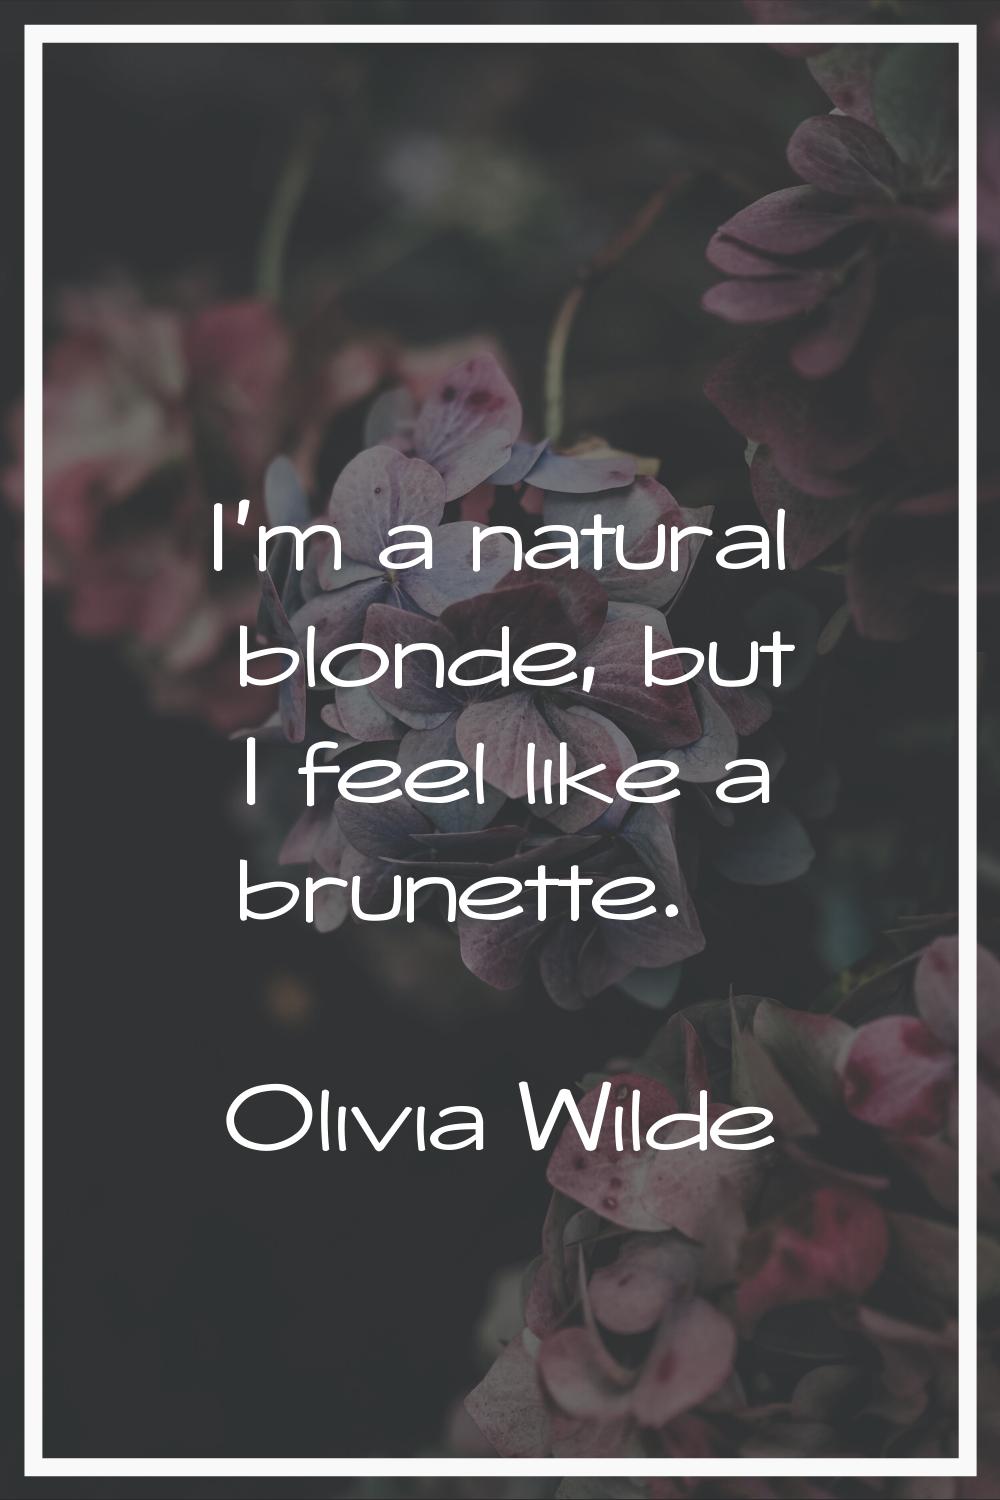 I'm a natural blonde, but I feel like a brunette.